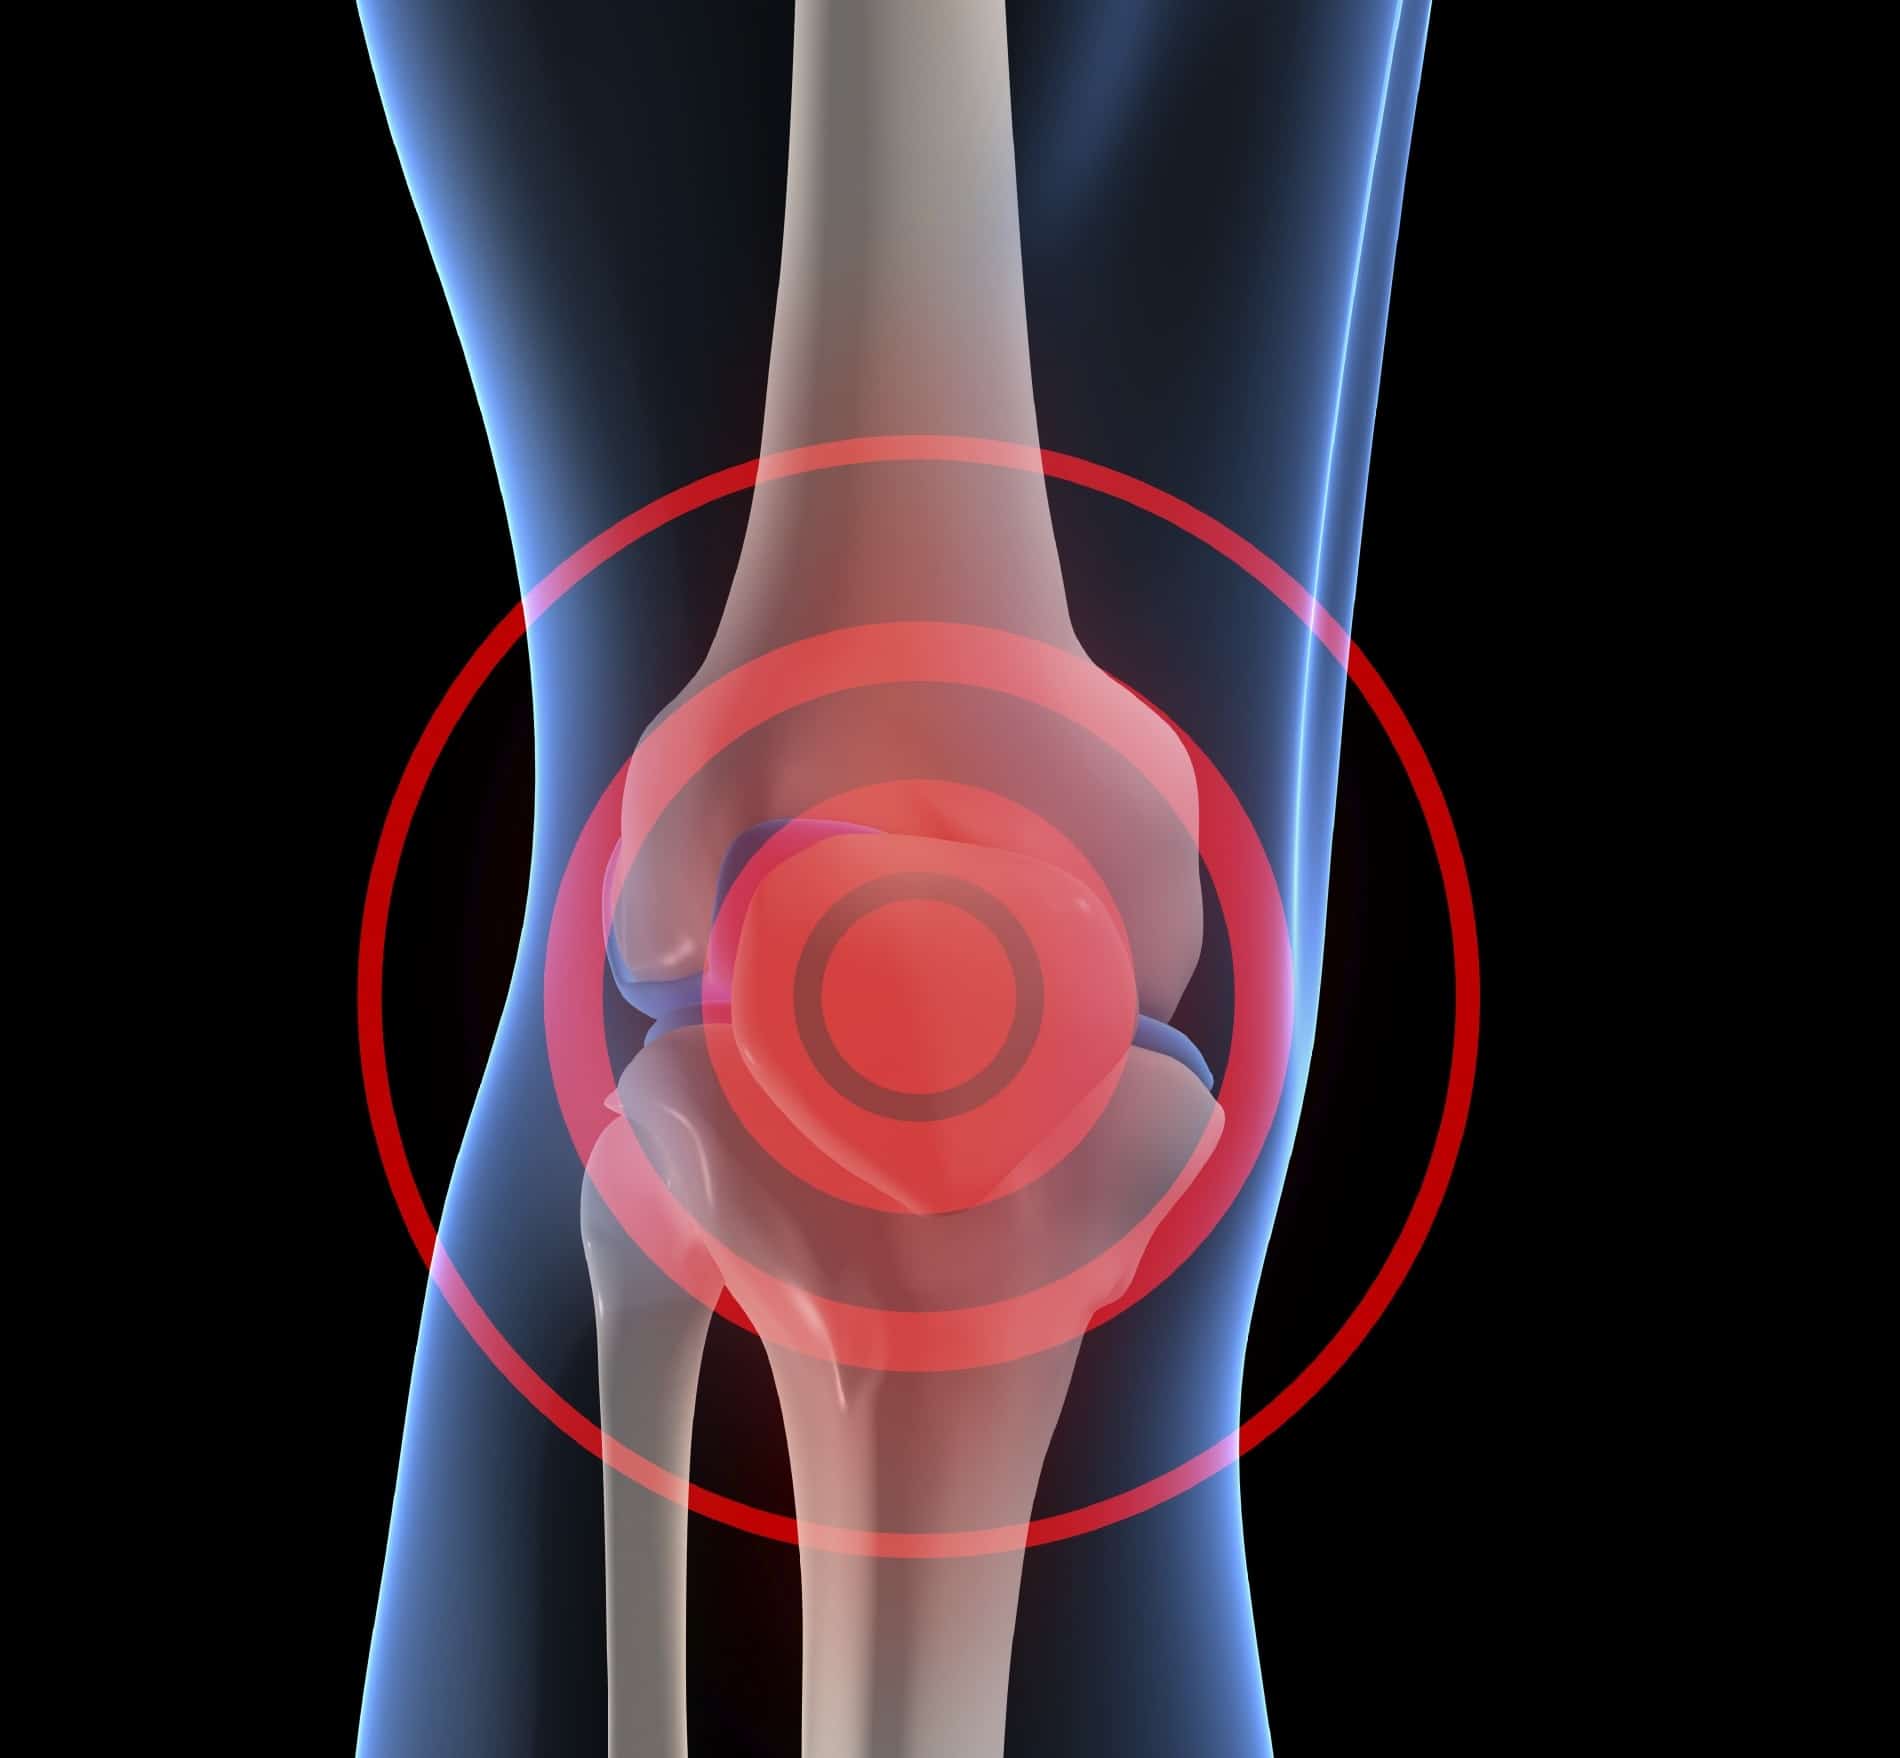 Women Who Drink Milk May Slow Knee Osteoarthritis